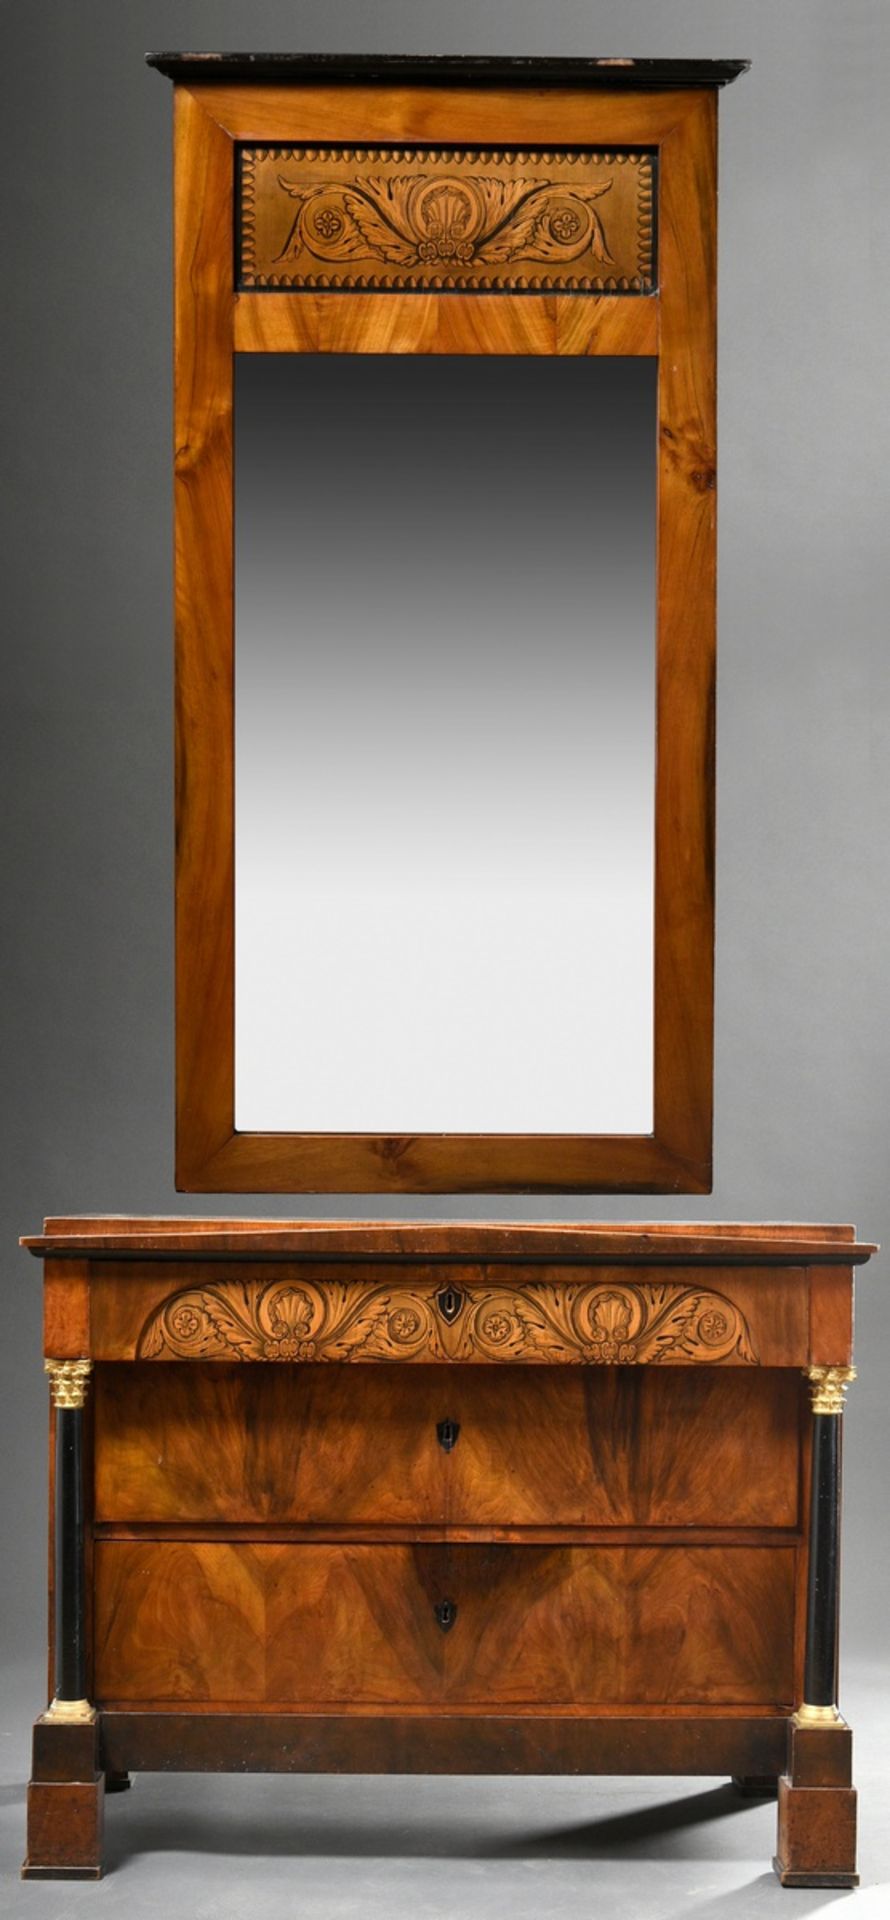 2 Teile Biedermeier Konsolkommode und passender Spiegel mit Schwarzlotmalerei Dekorationen nach ant